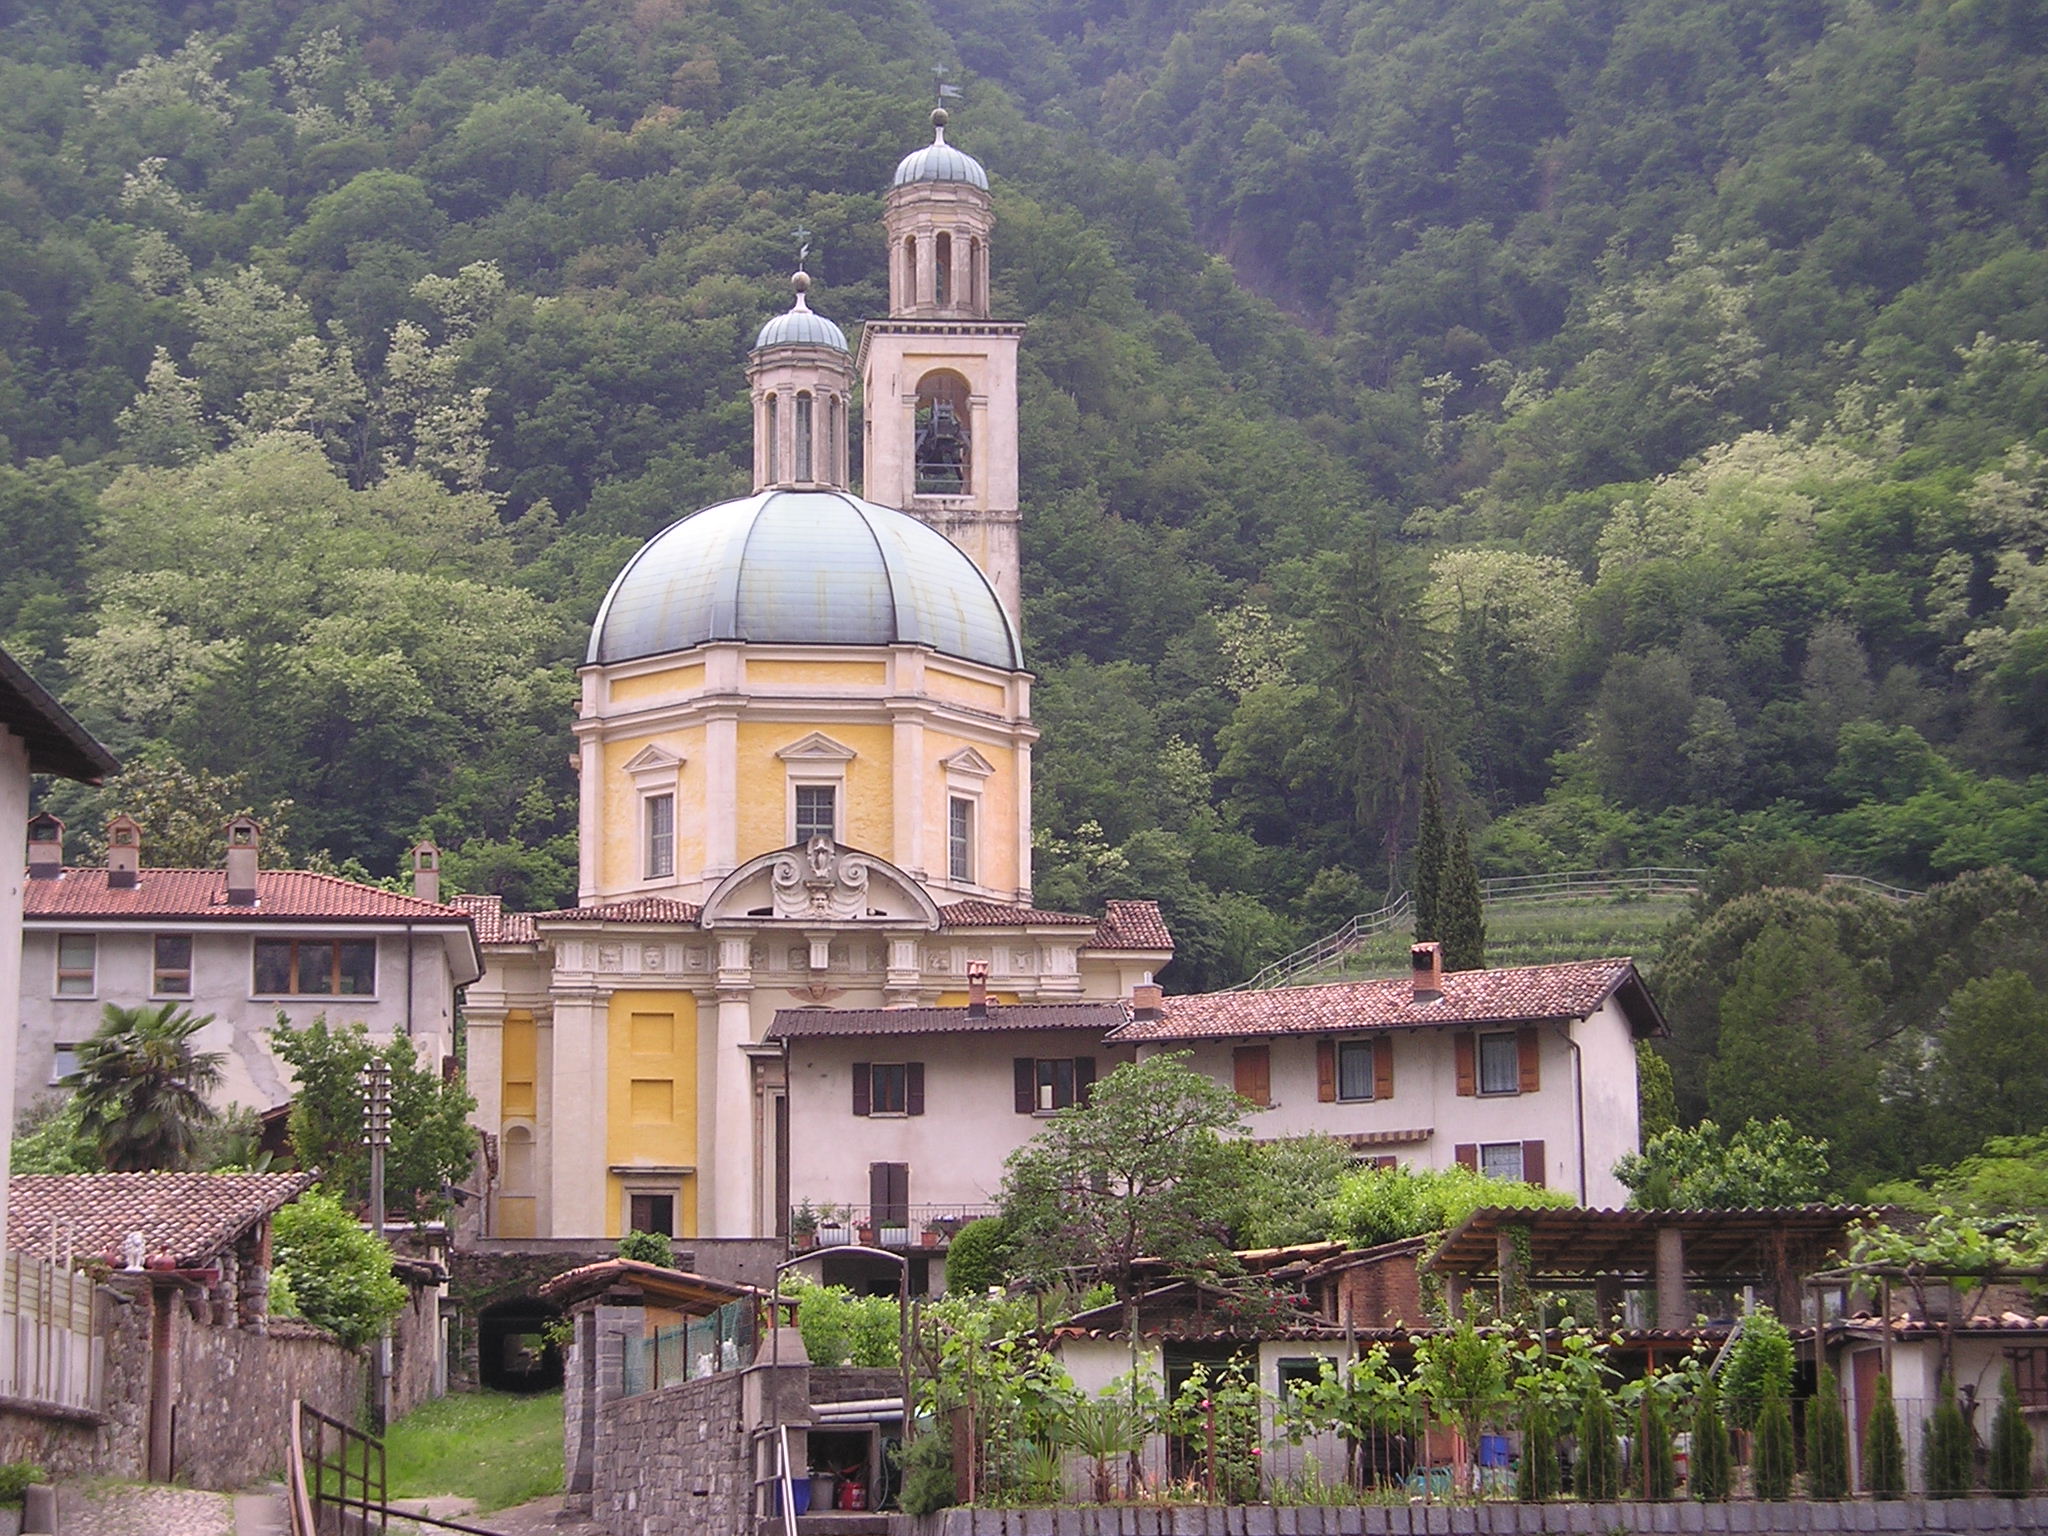 Chiesa di Santa Croce (Riva San Vitale) - Wikipedia